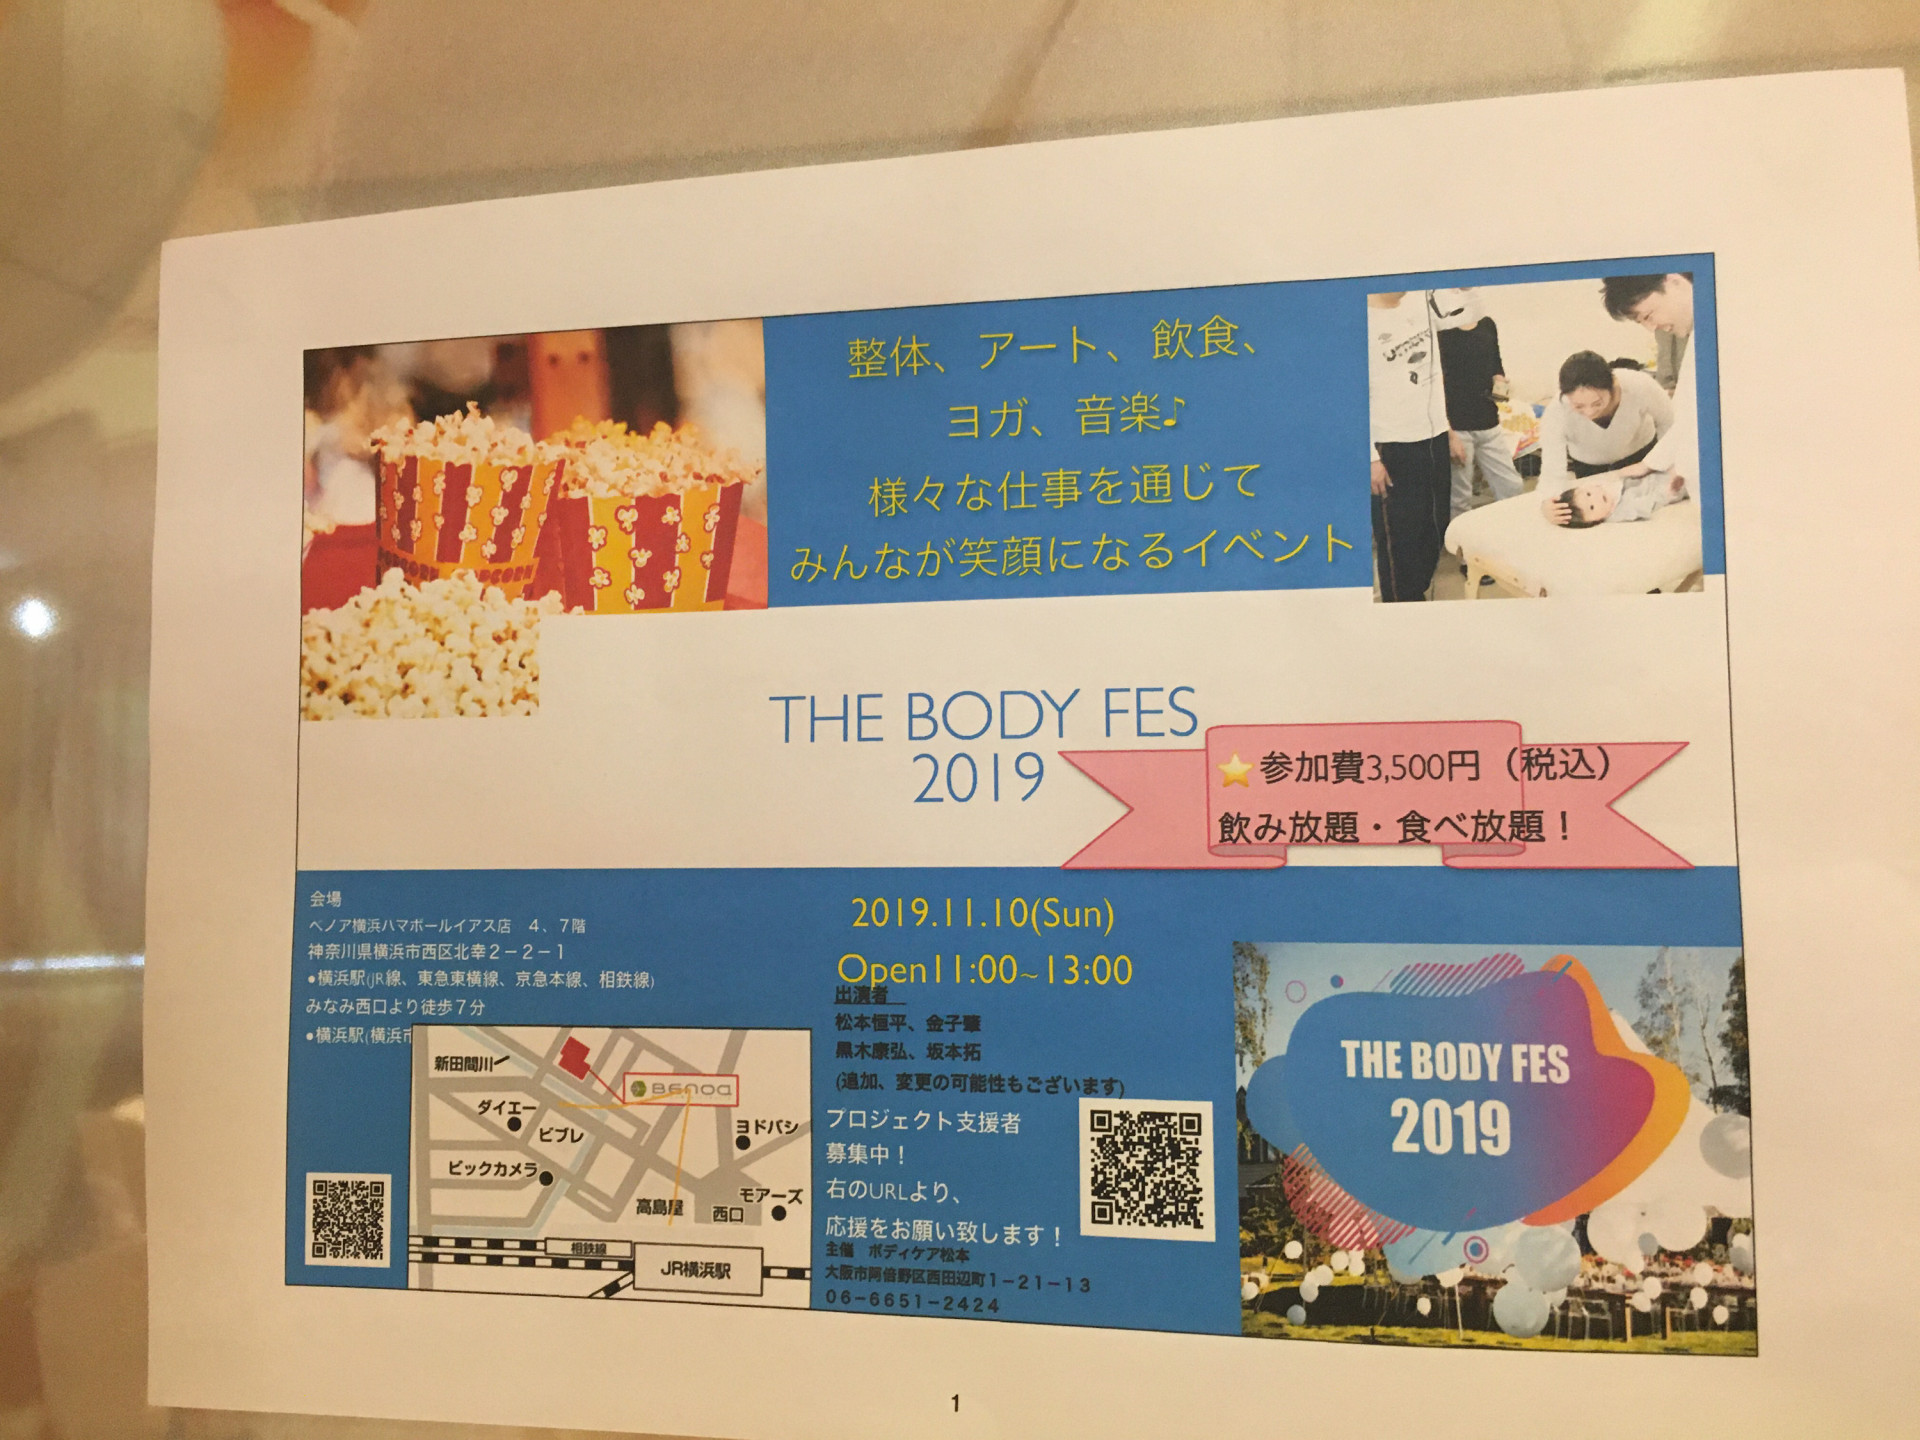 整体院ボディケア松本様の主催のイベント THE BODY FES 2019に出演しました。